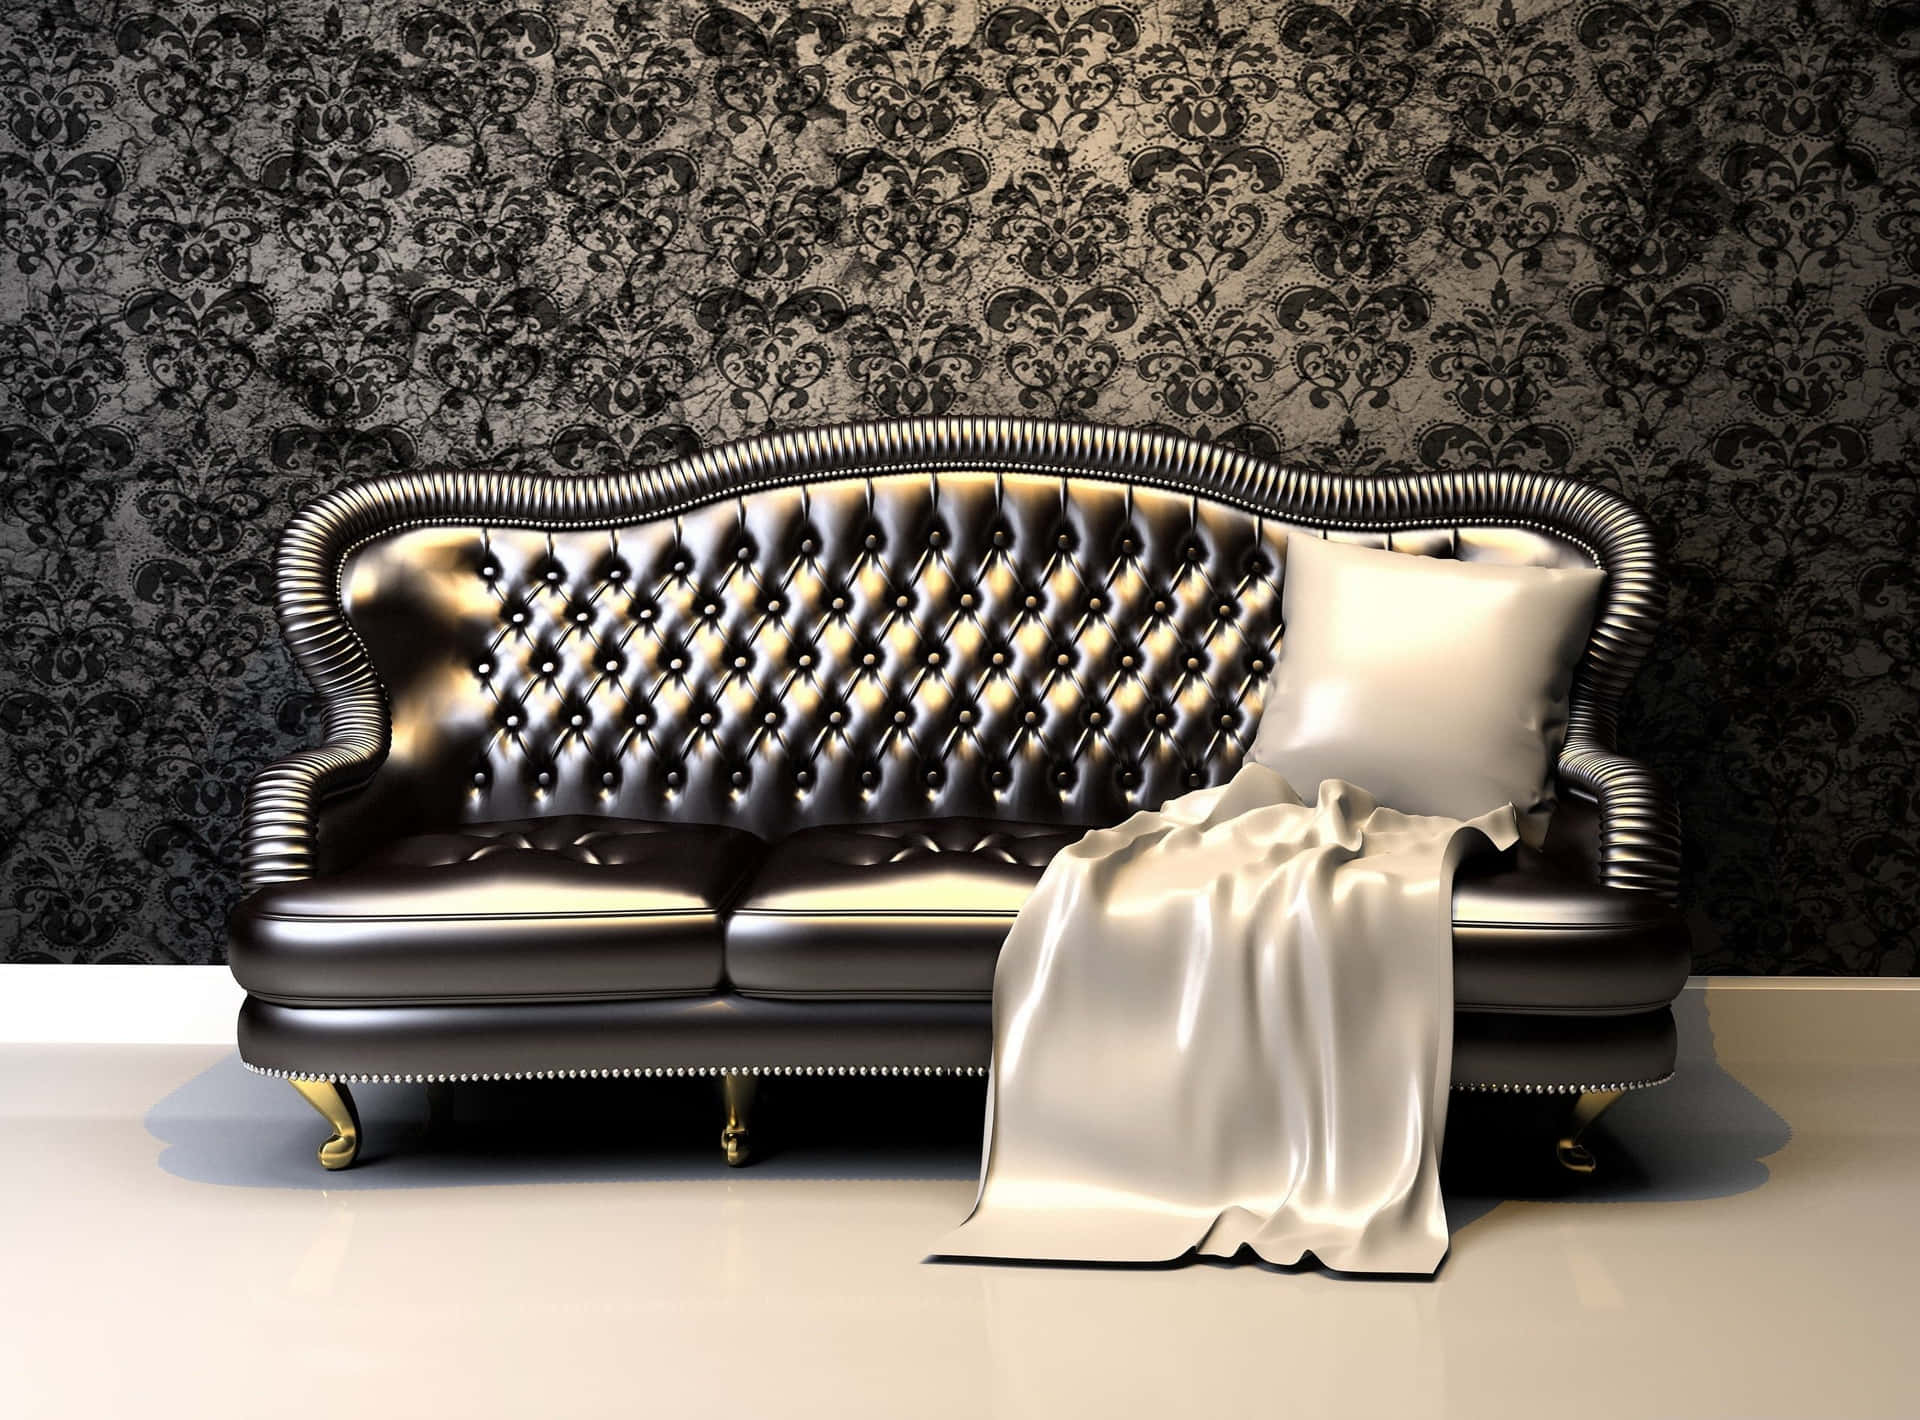 Lys luksuriøs sort sofa med kompliceret mønster Wallpaper